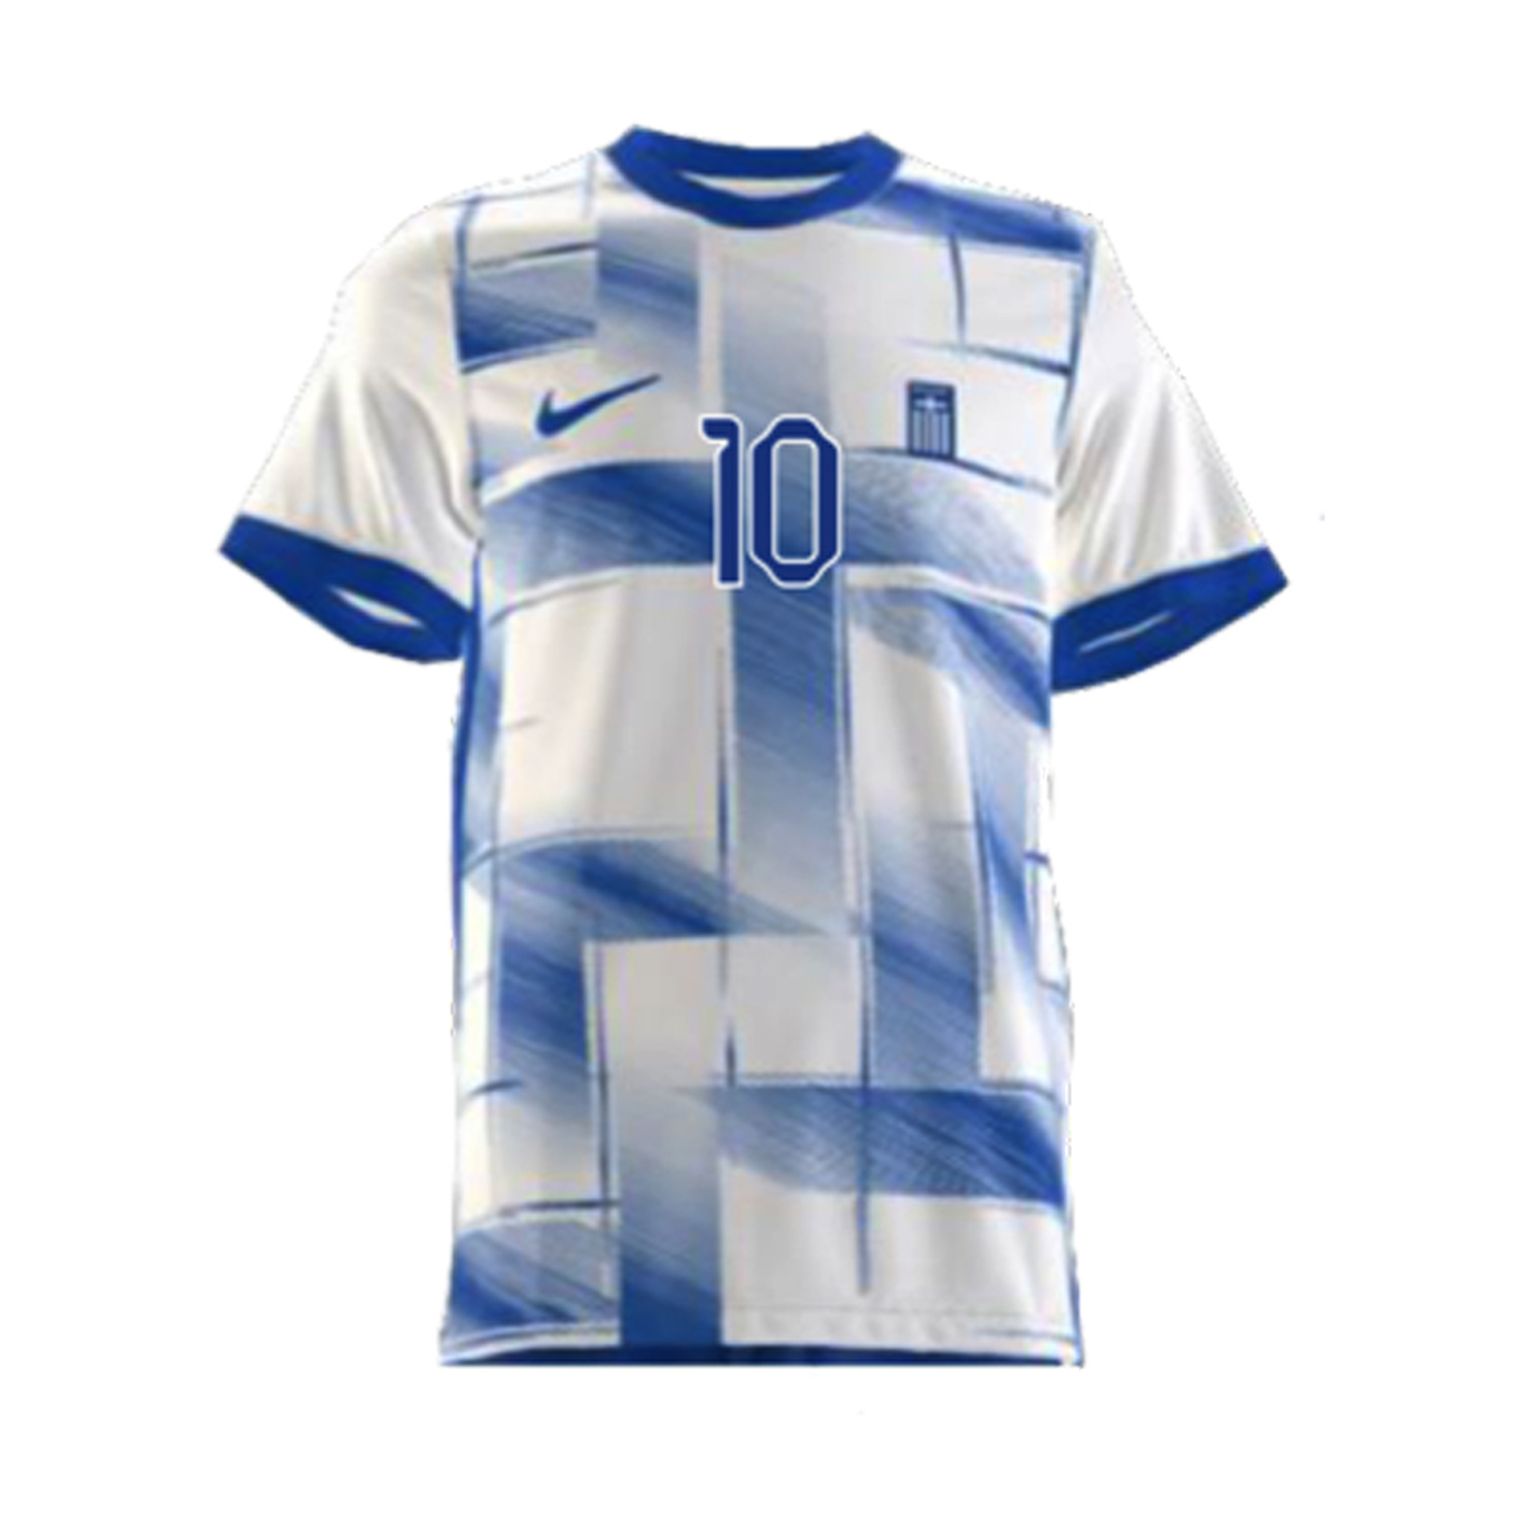 Новые футболки сборной Греции по футболу вызвали скандал.